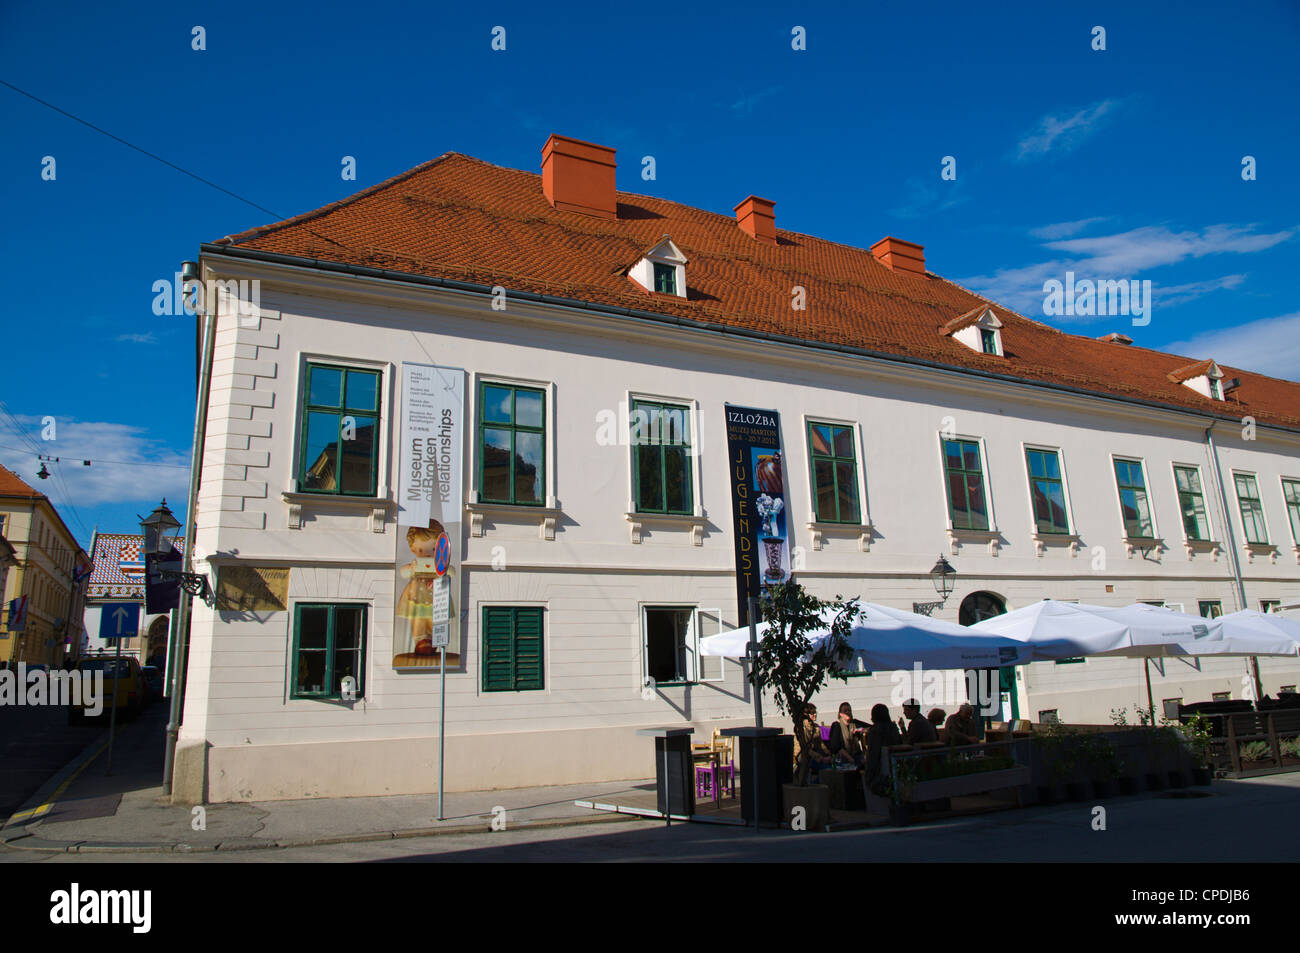 Musée de relations brisées exterior Katarinin trg square Gradec la vieille ville Zagreb Croatie Europe Banque D'Images